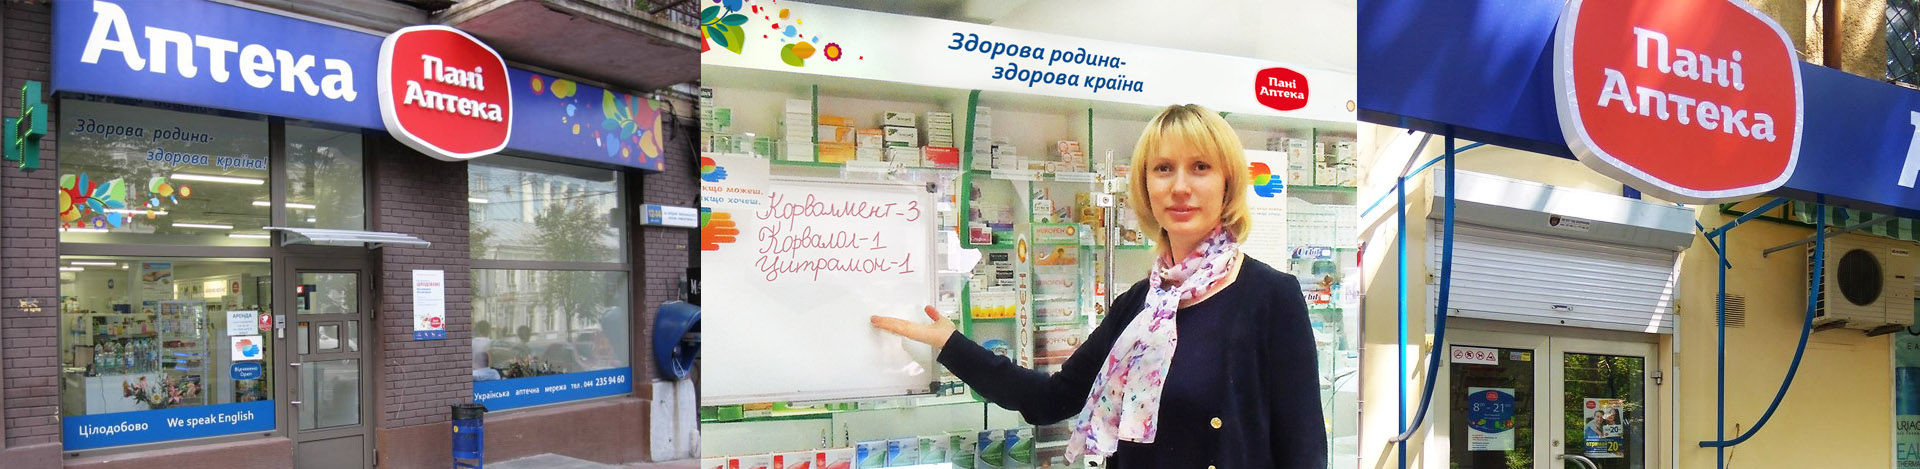 Pharmacy branding